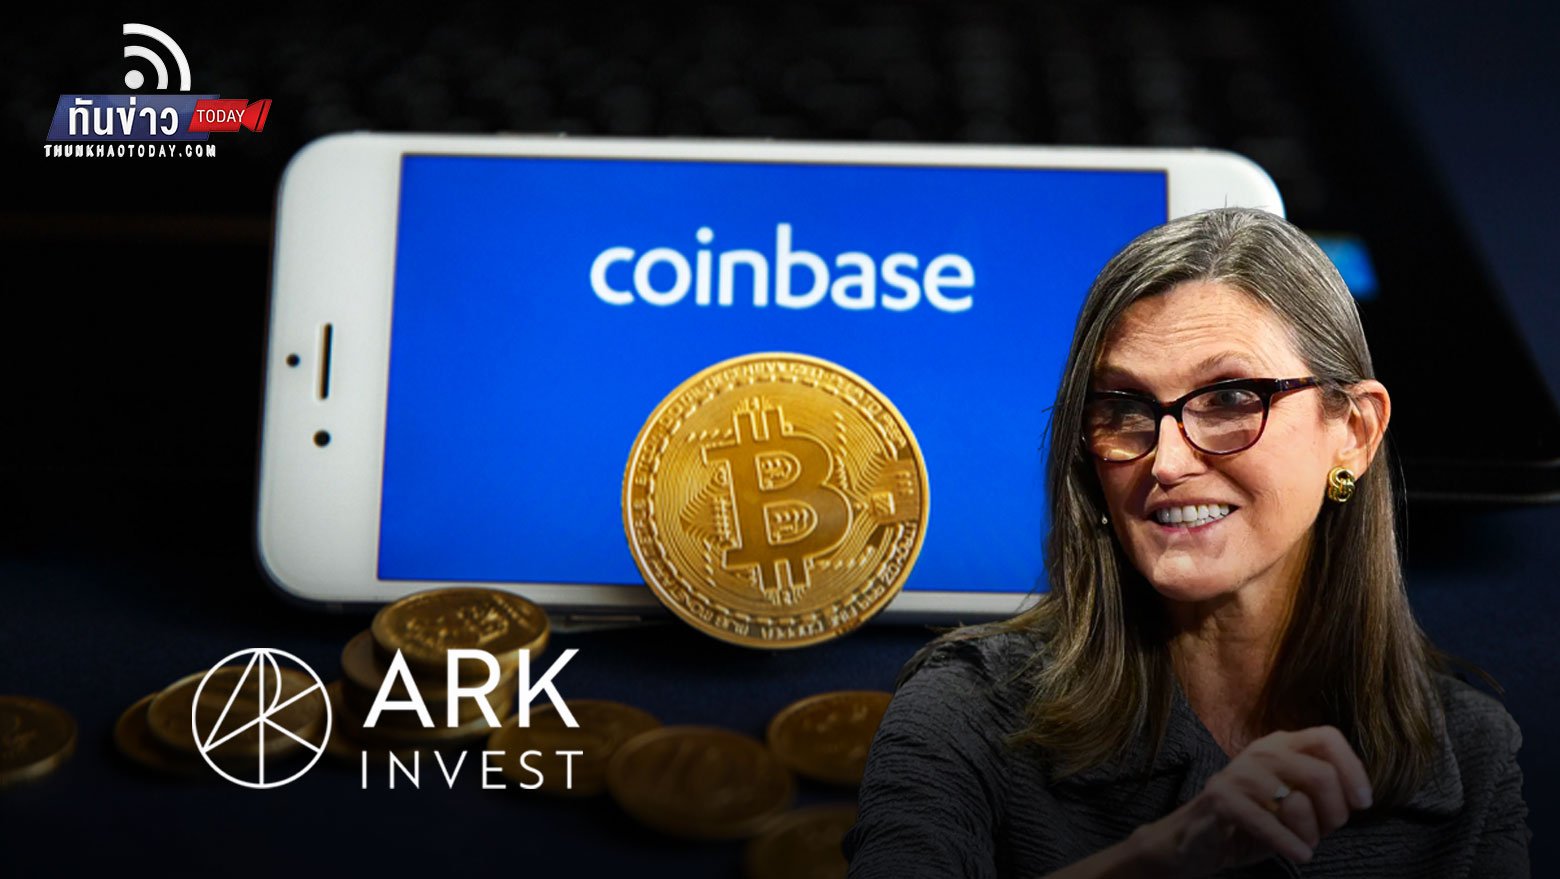 กอง Ark Invest ของ Cathie Wood เข้าซื้อหุ้น Coinbase มากกว่าครึ่งล้านหุ้น ในช่วงหุ้นร่วง!